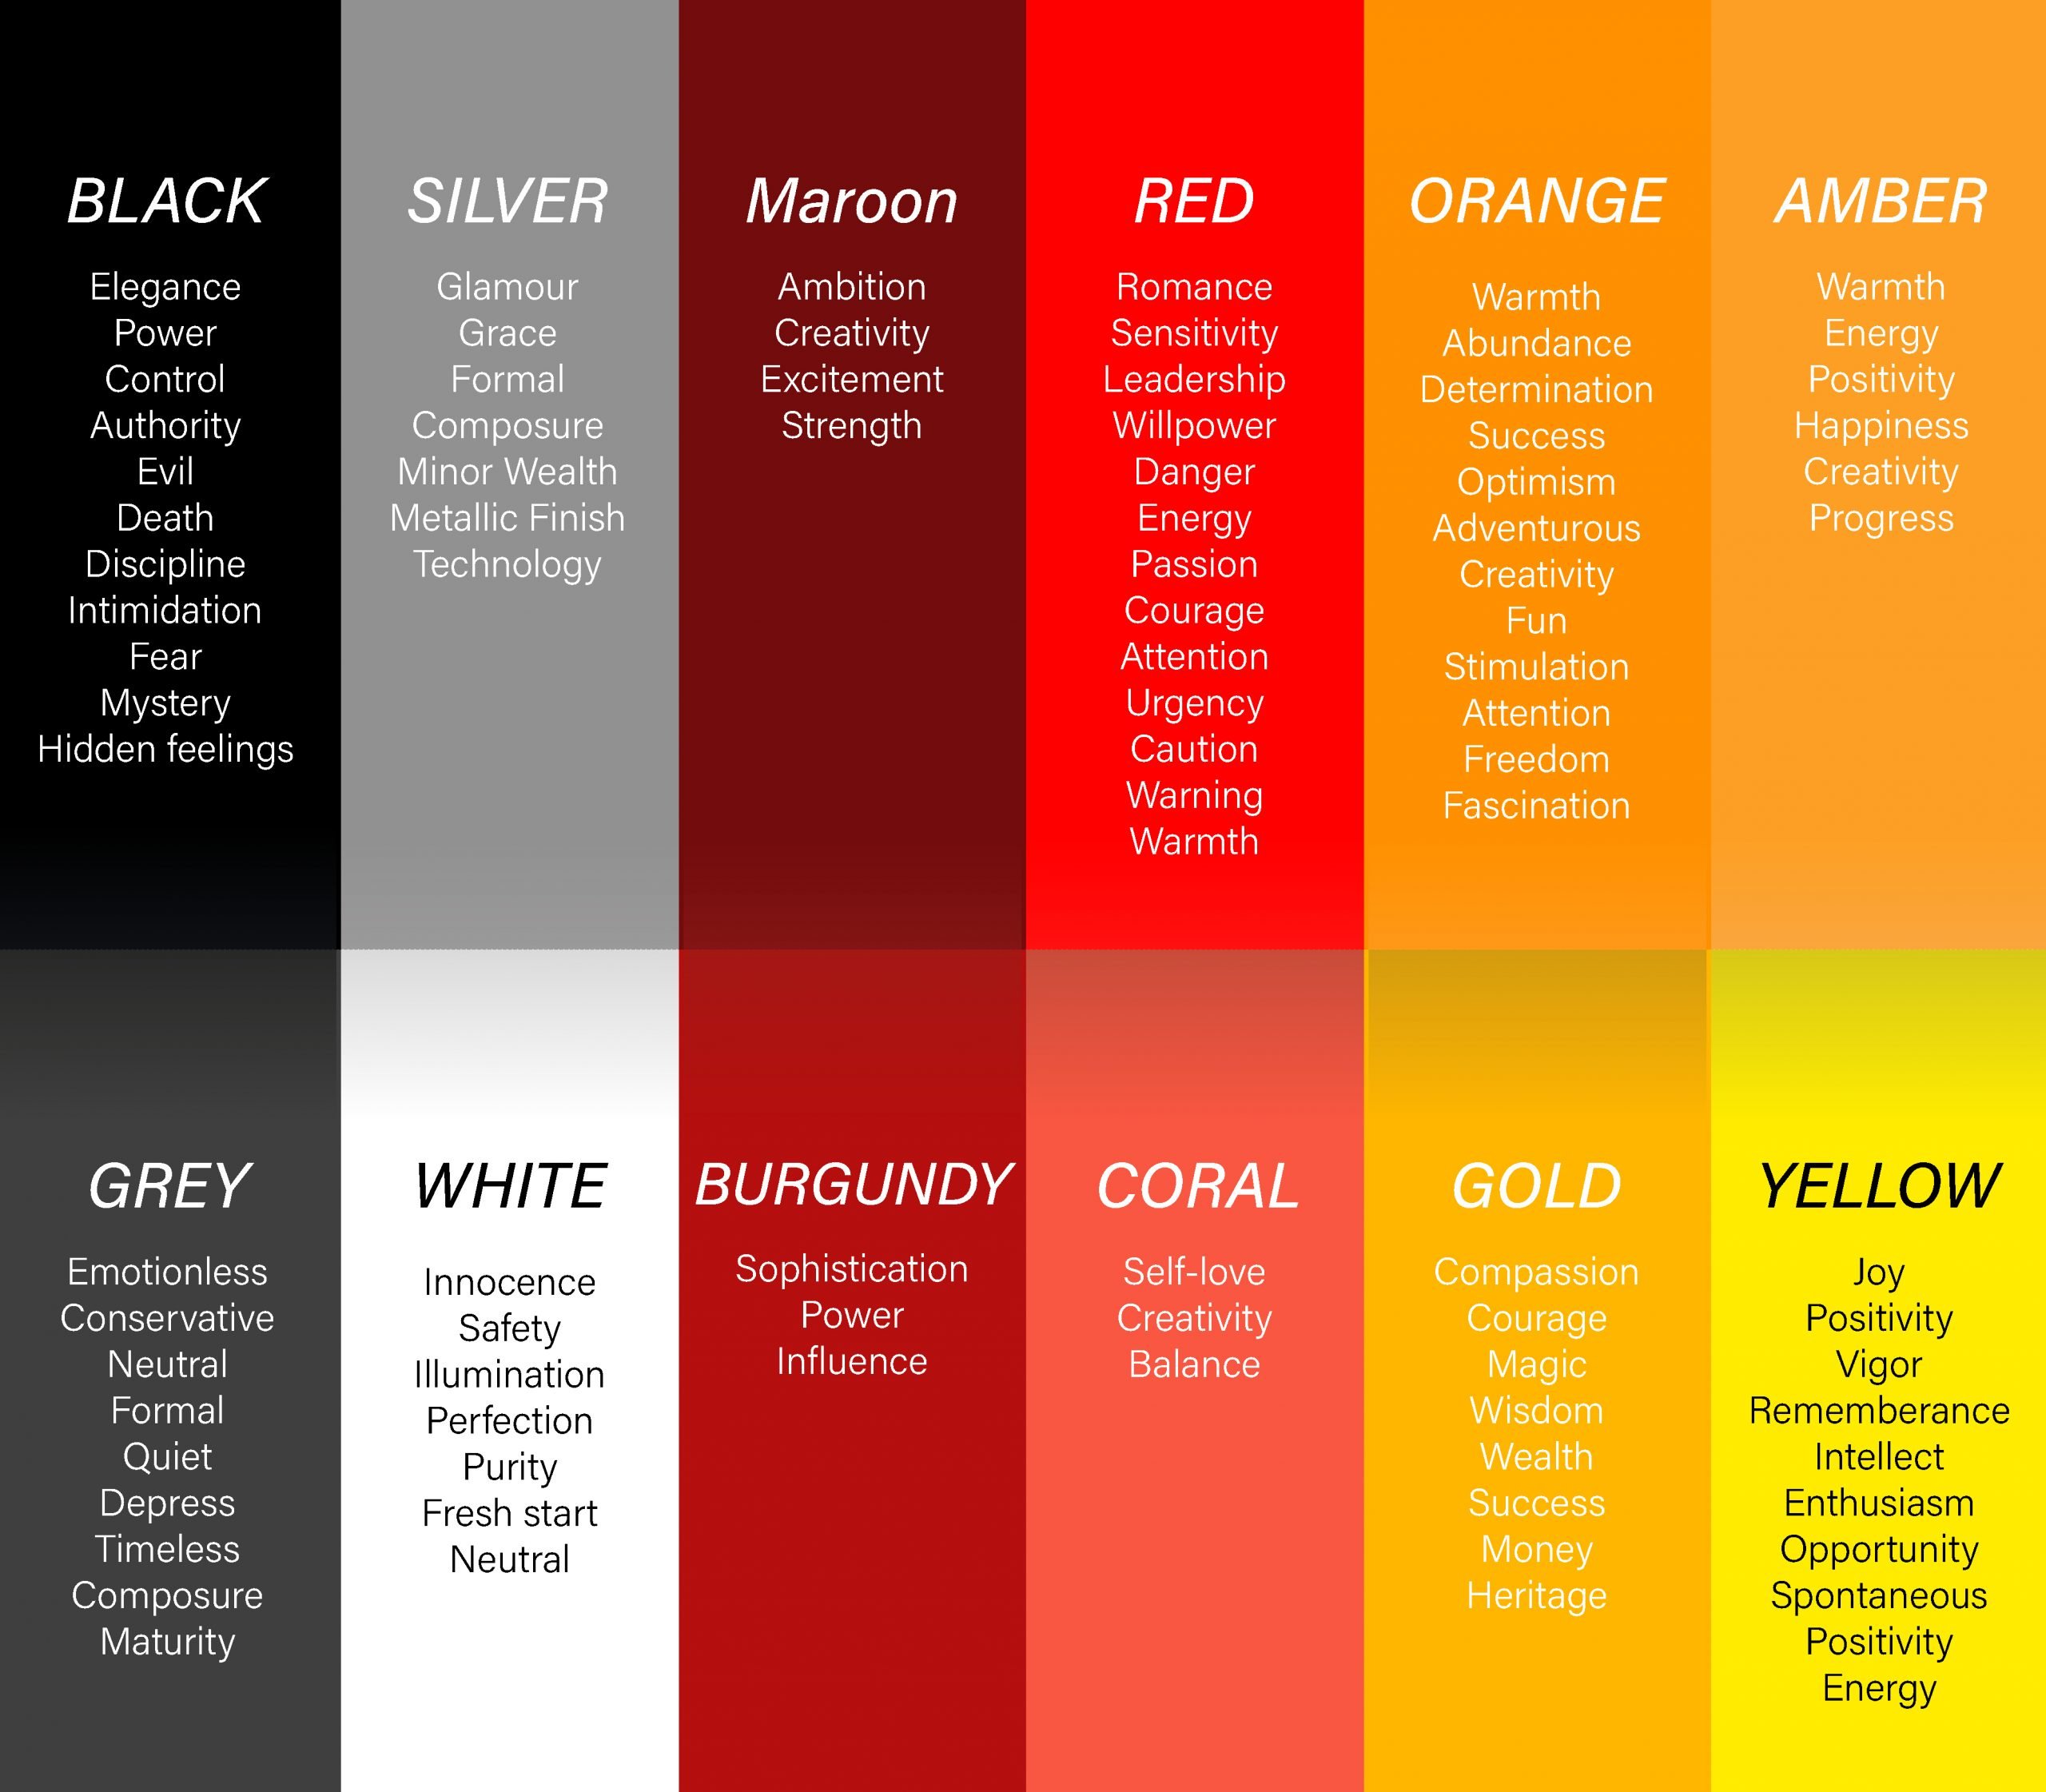 “色彩心理学”图表，显示了通常与红、橙、黄、灰等特定颜色相关的特征和特征。